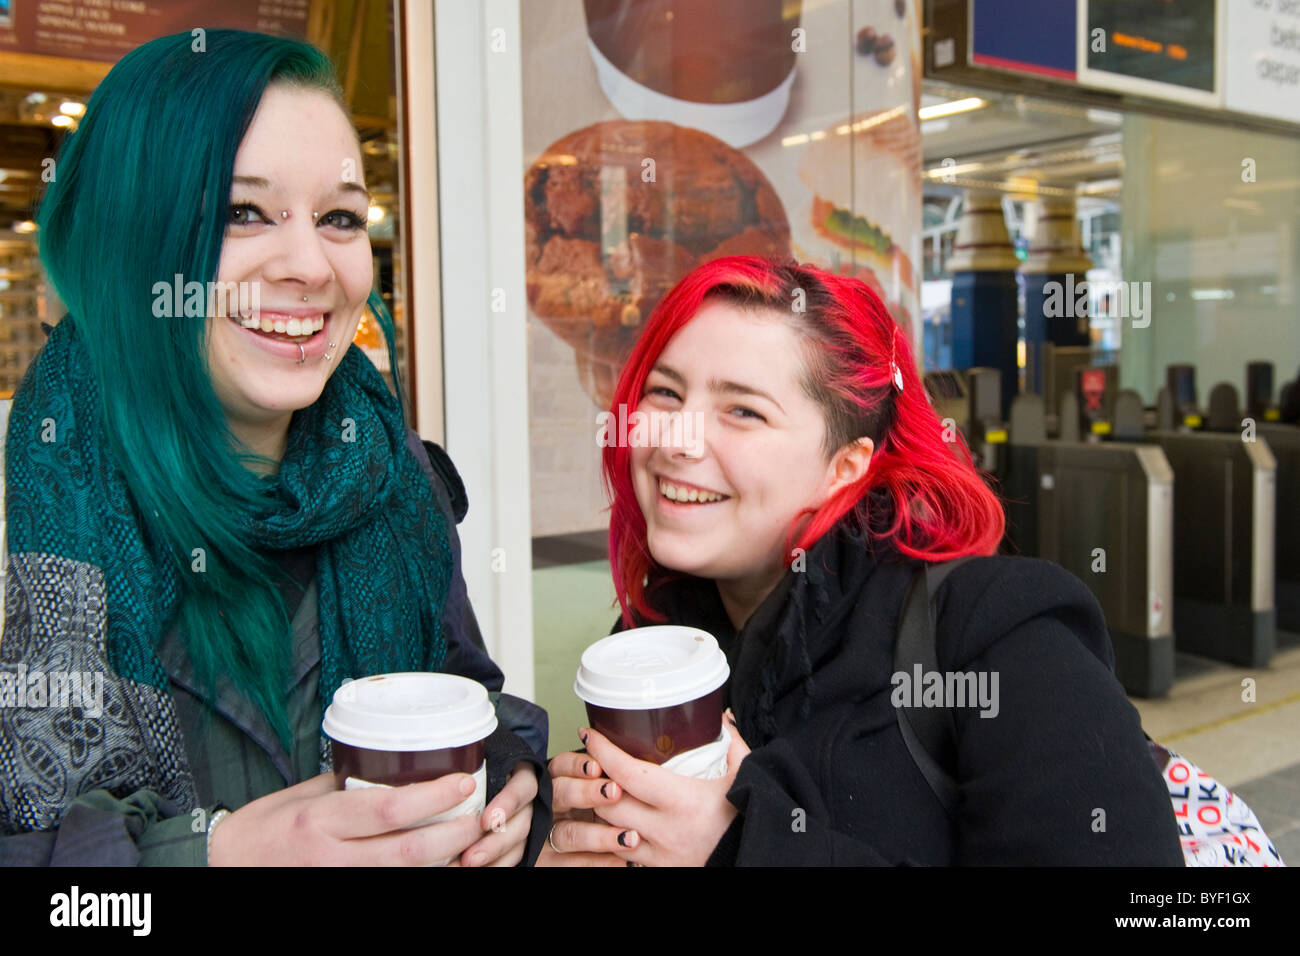 La gare de Liverpool Street Station deux jolies jeunes filles femmes  mesdames vert & rouge à lèvres piercing nez cheveux bouche tasses à café  smiling rire heureux Photo Stock - Alamy